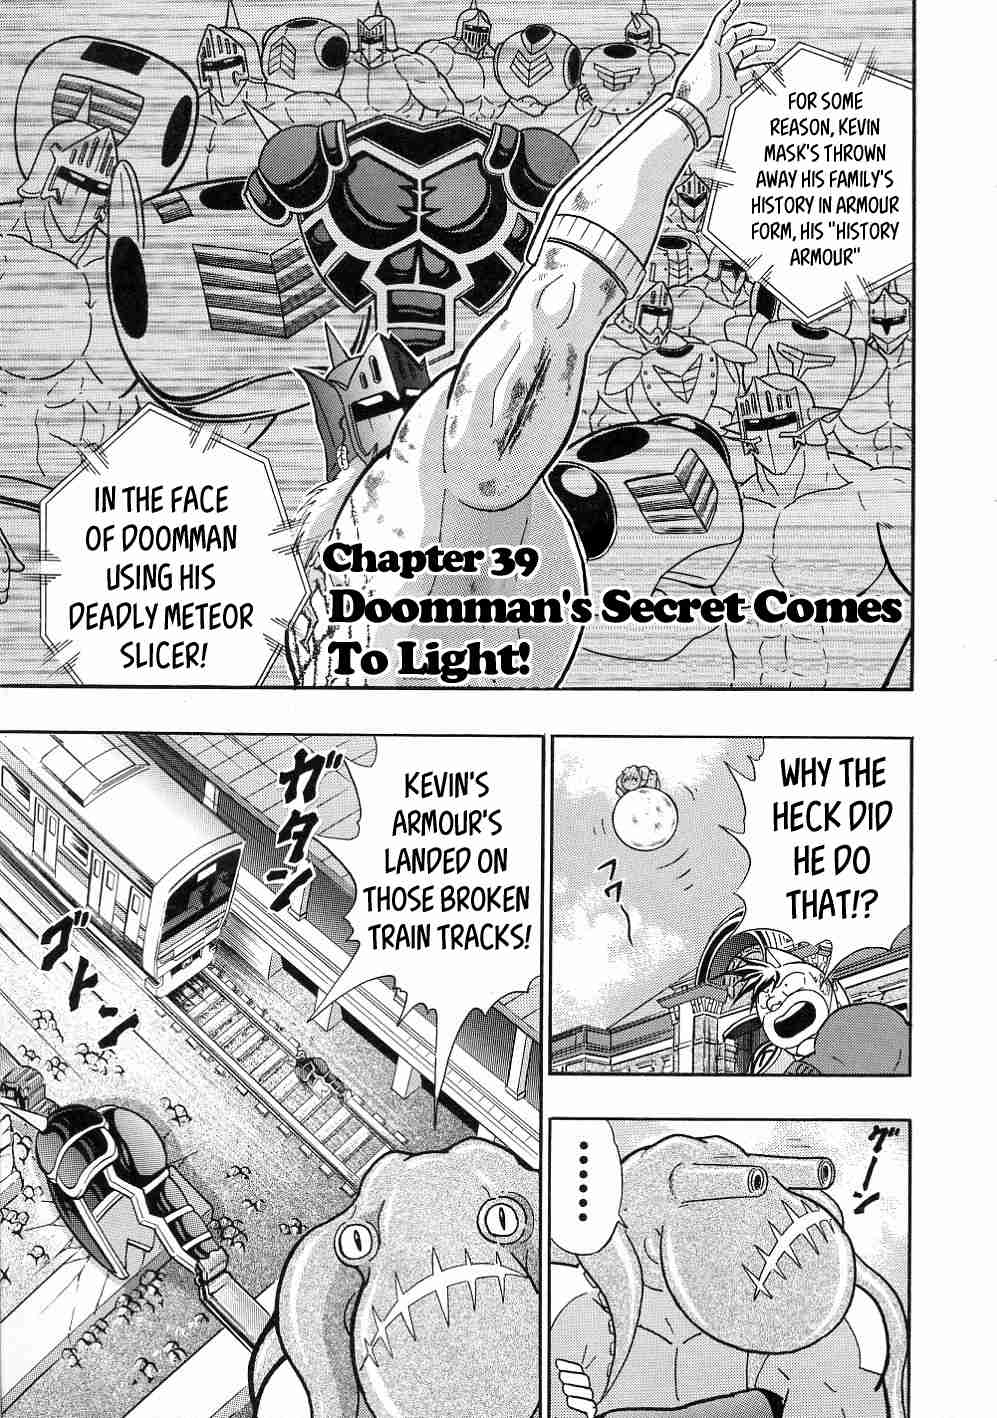 Kinnikuman II Sei: All Choujin Daishingeki Vol. 3 Ch. 39 Doomman's Secret Comes To Light!